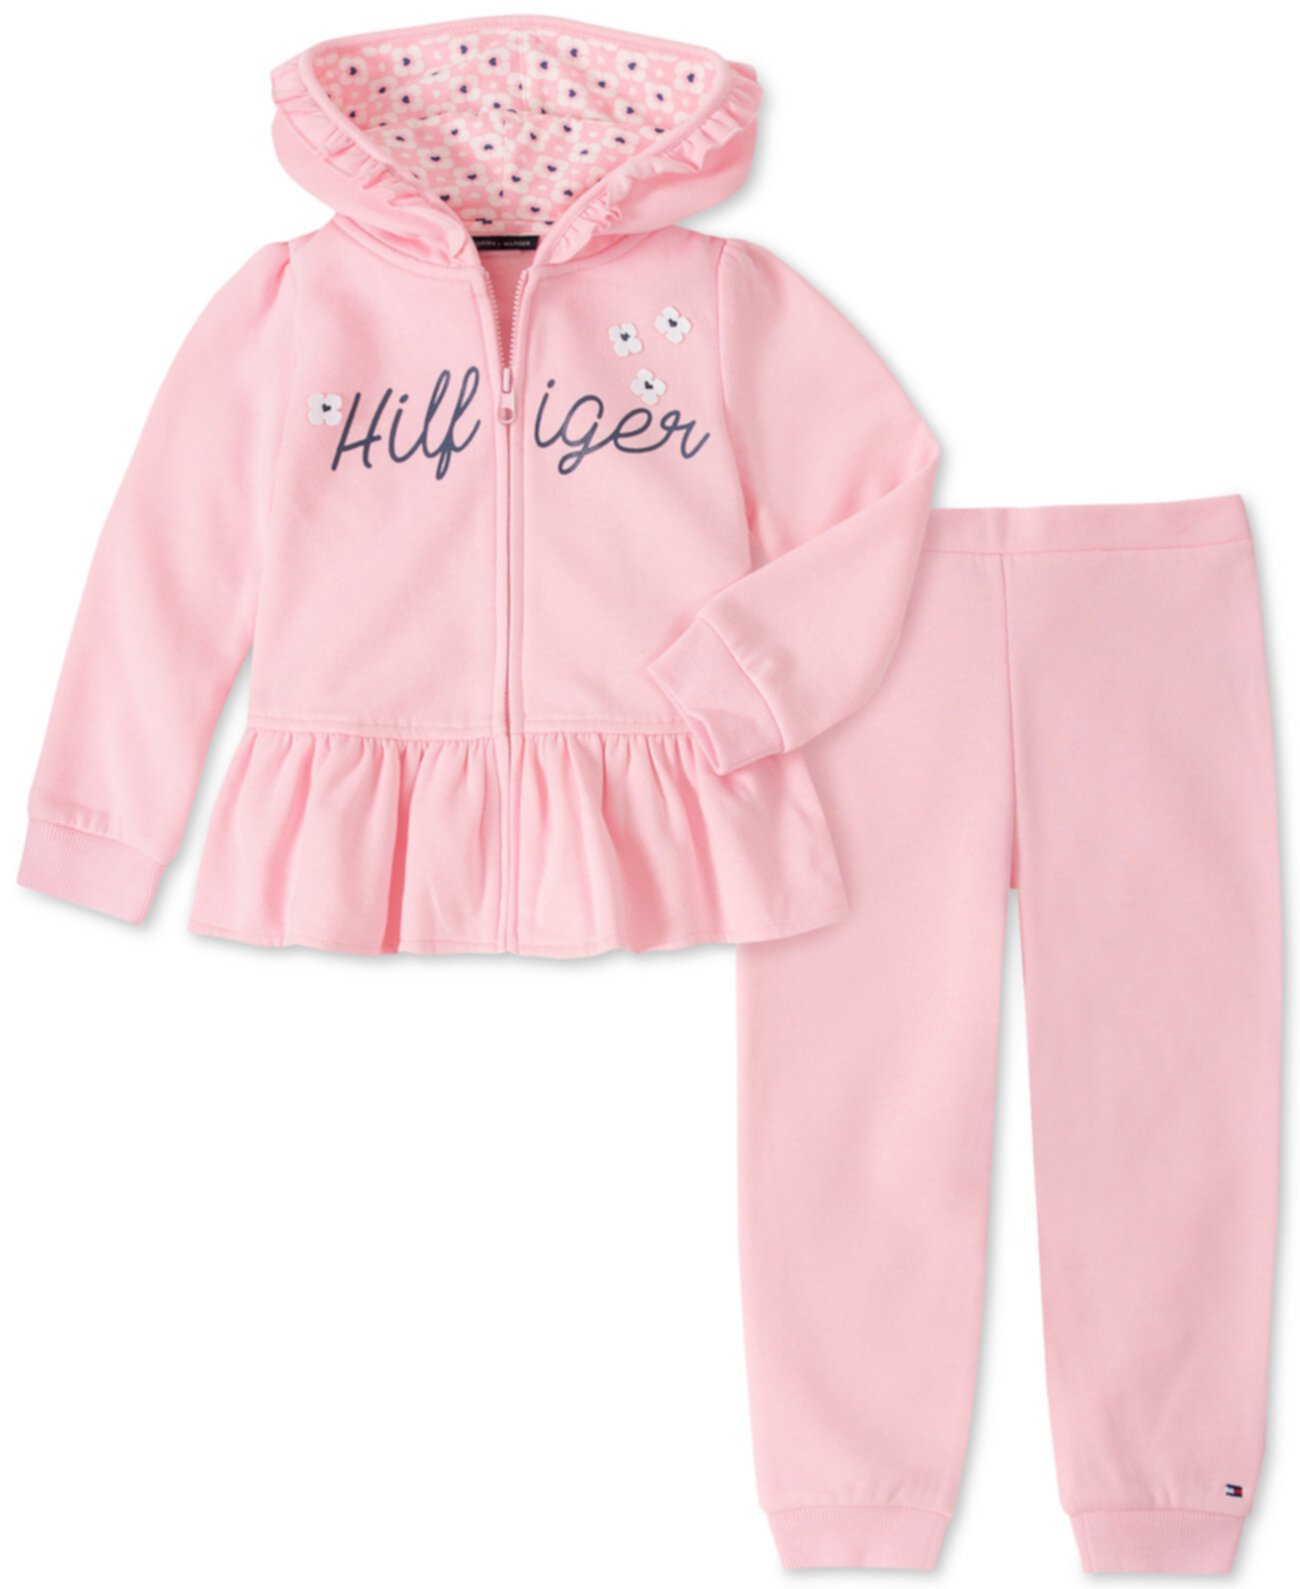 Baby Girls 2-шт. Комплект: флисовая куртка с капюшоном и трусиками Jogger Tommy Hilfiger